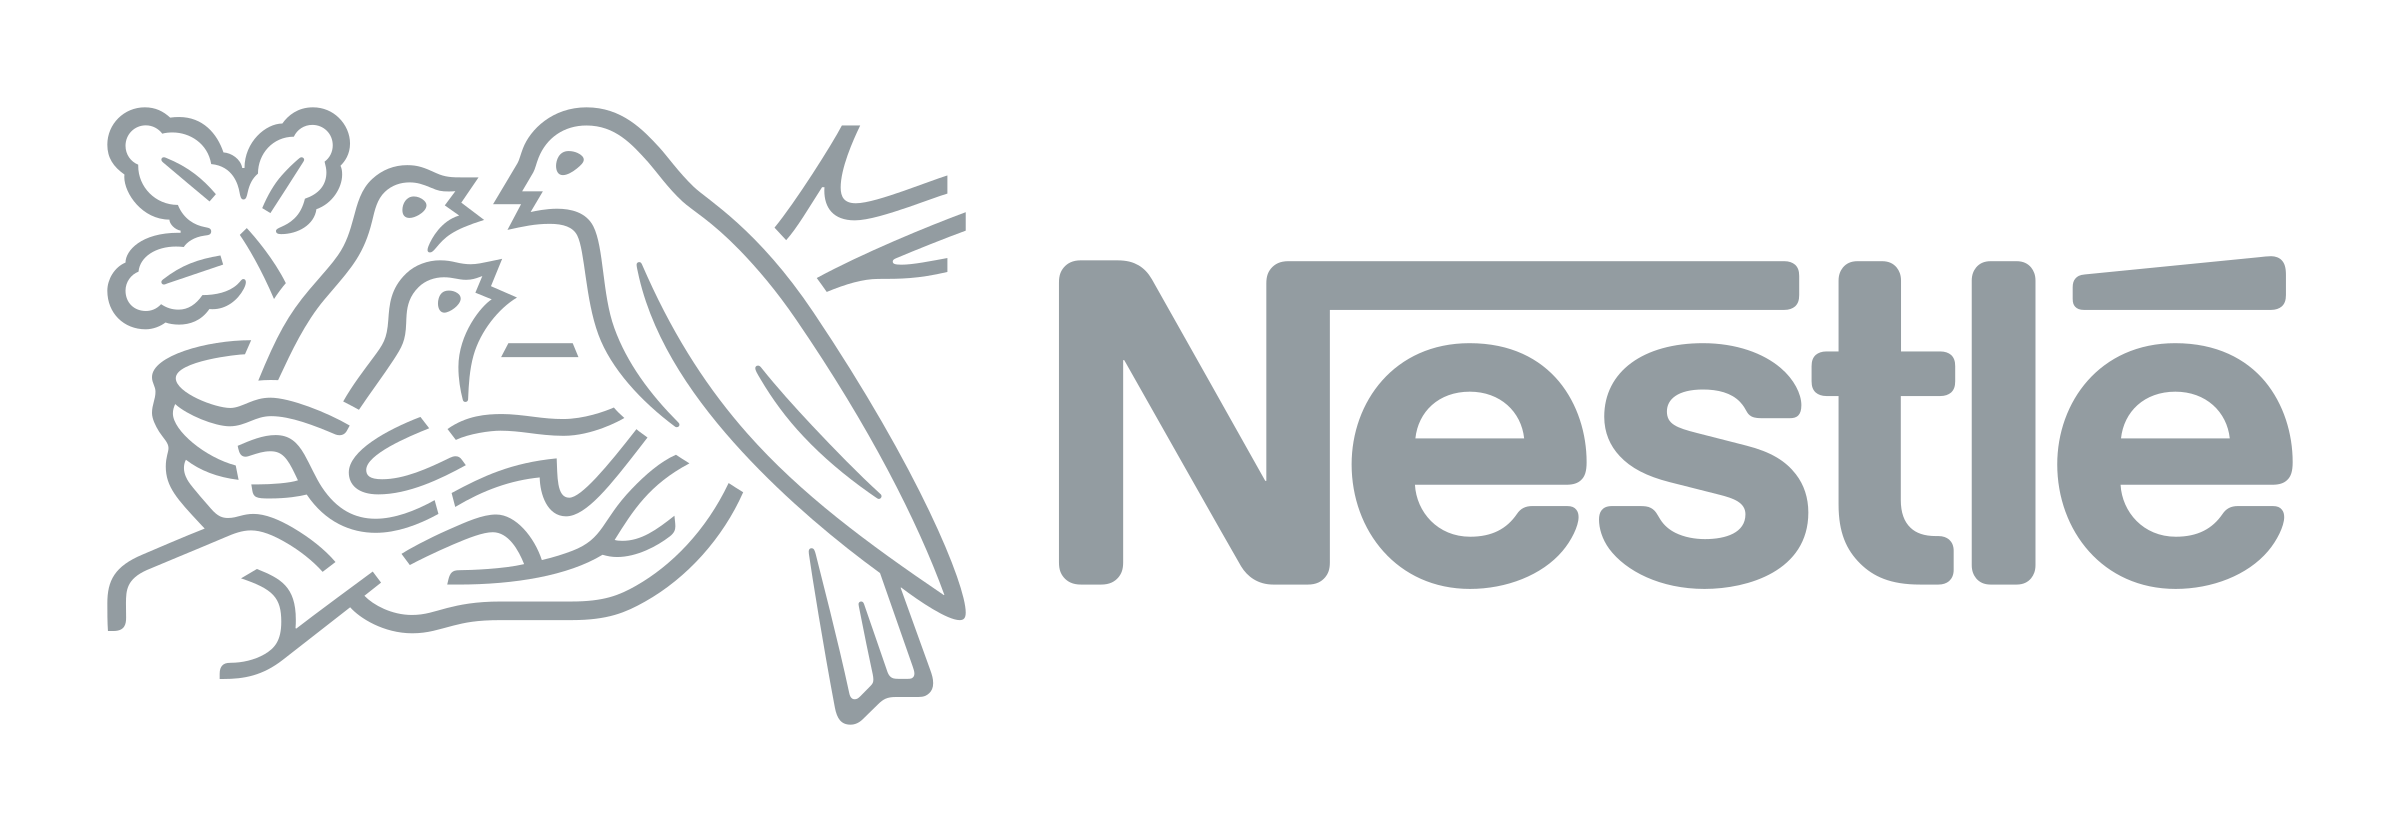 nestle-logo-png-transparent.png